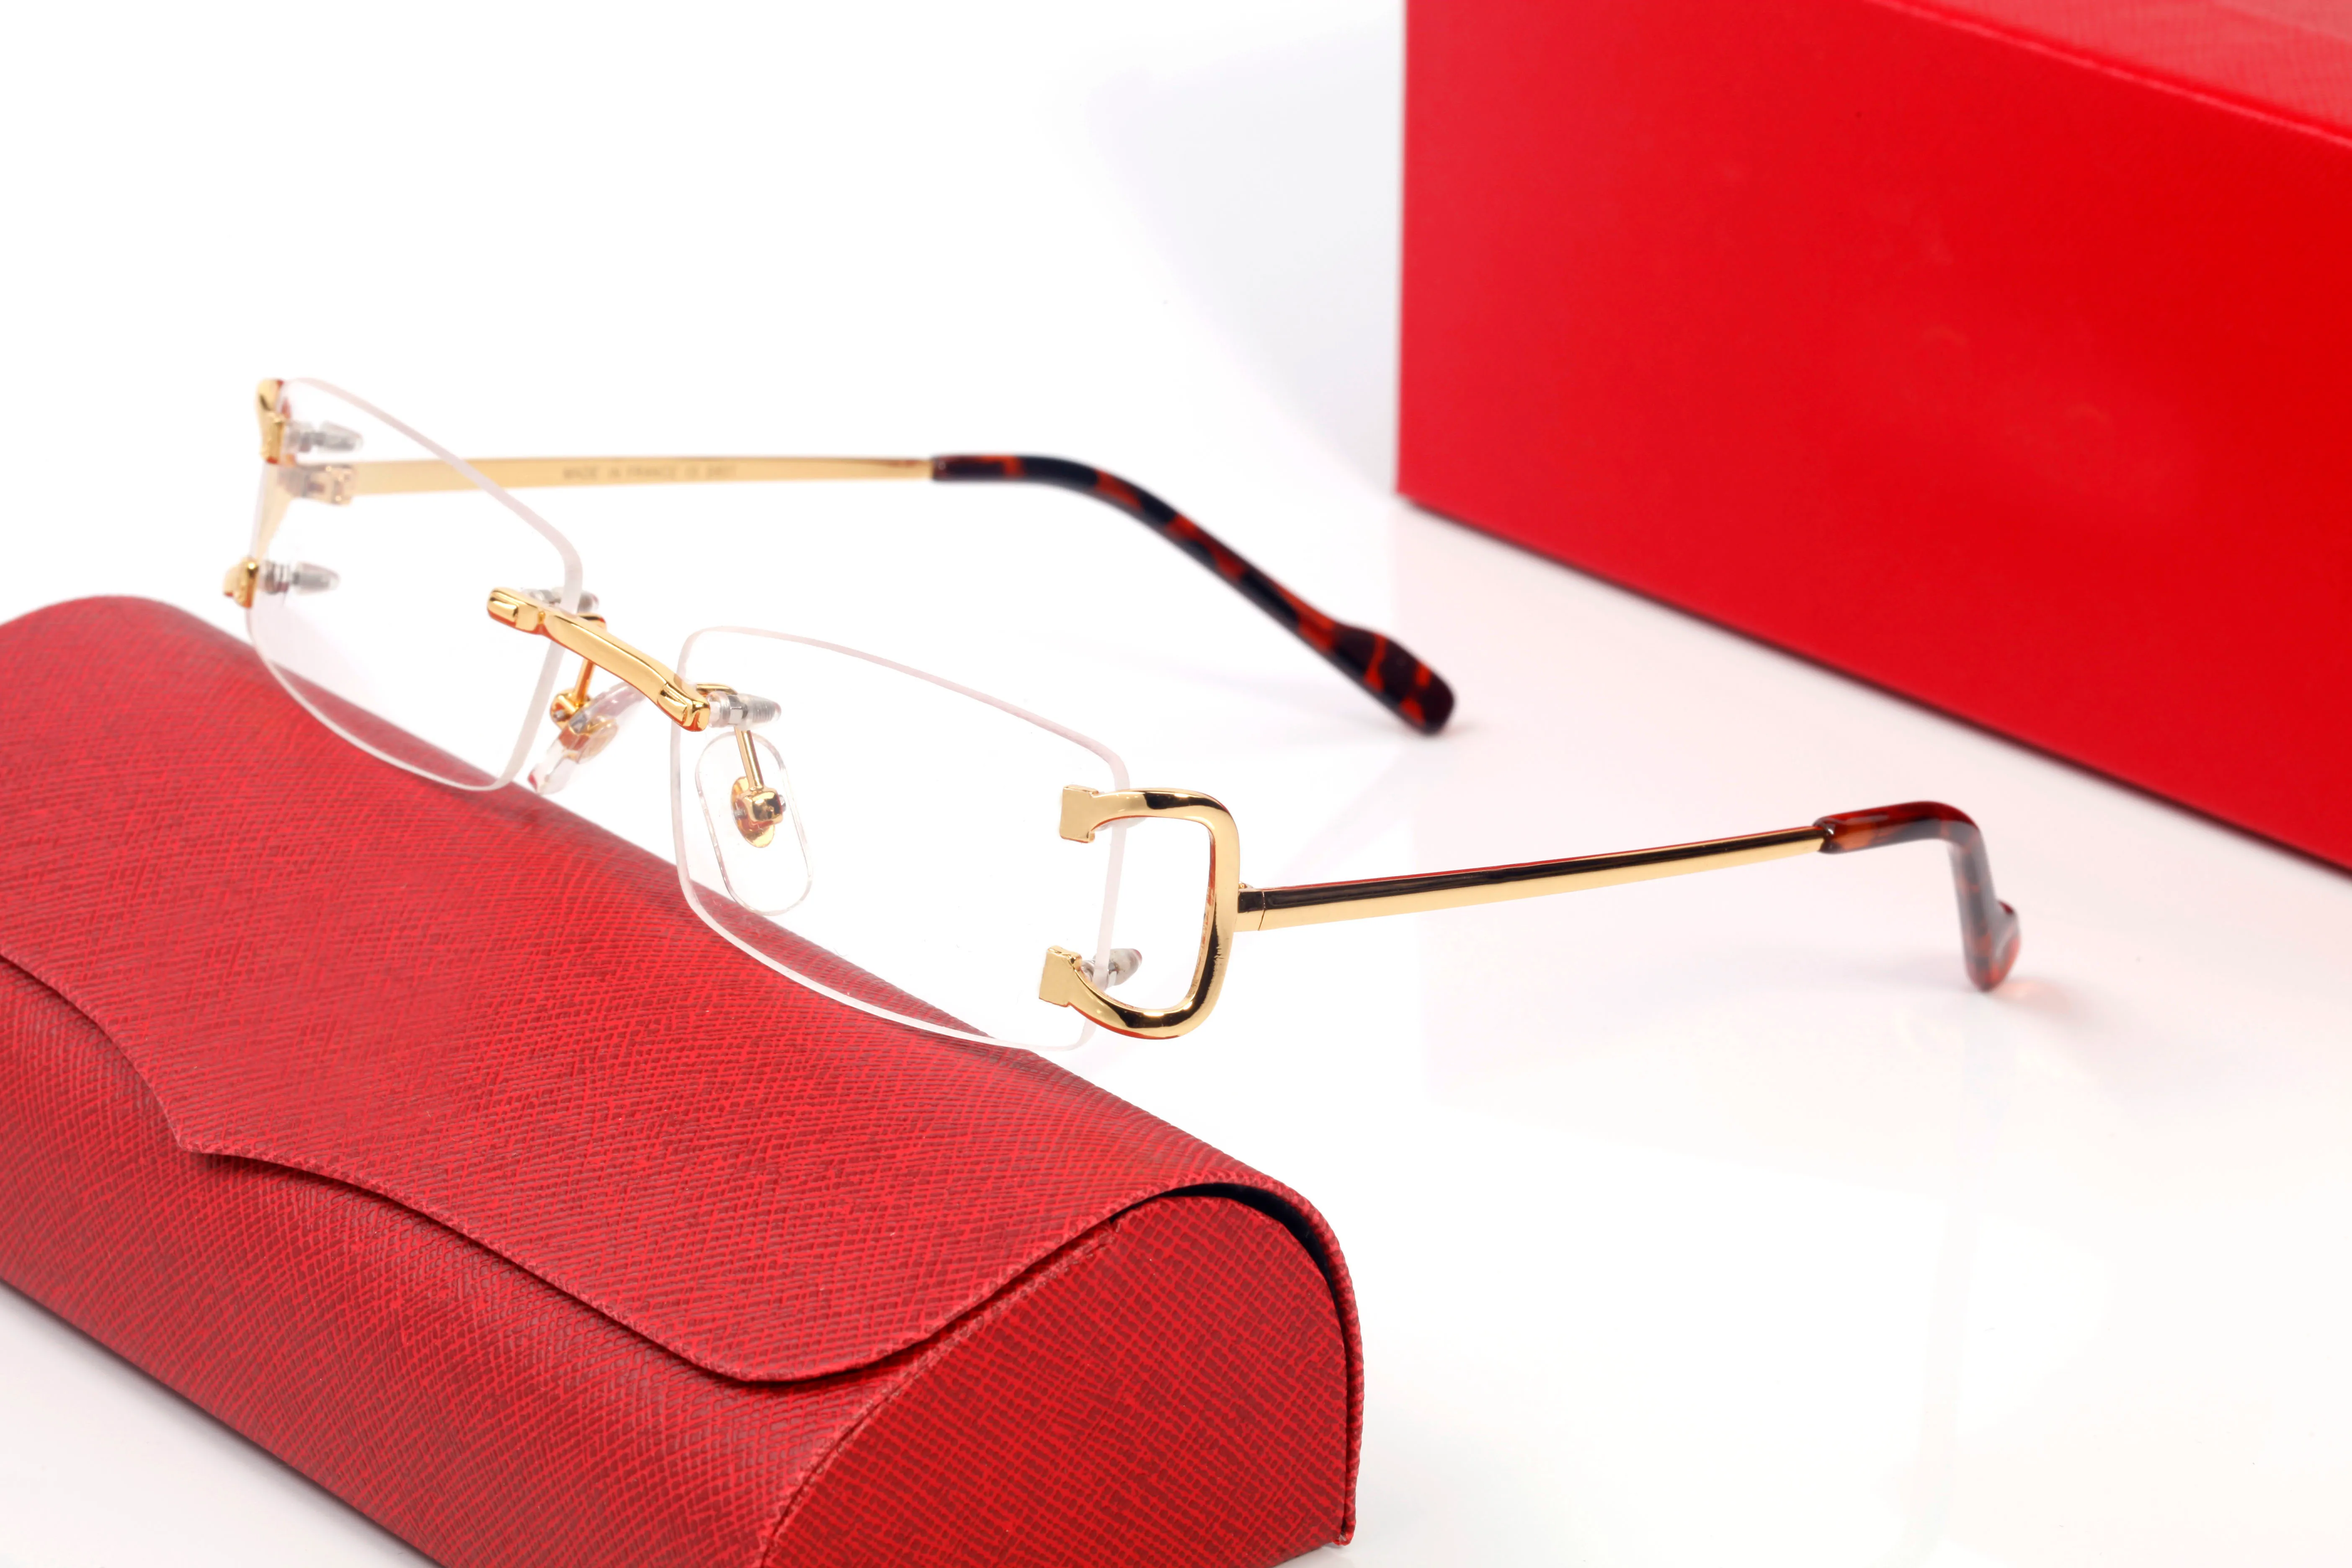 Marke Carti Gläser Designer Sonnenbrillen für Männer Frauen Rechteckige rahmenlose Sonnenbrille Silber Winzige Seide Mode Sonnenbrillenrahmen Ey219u